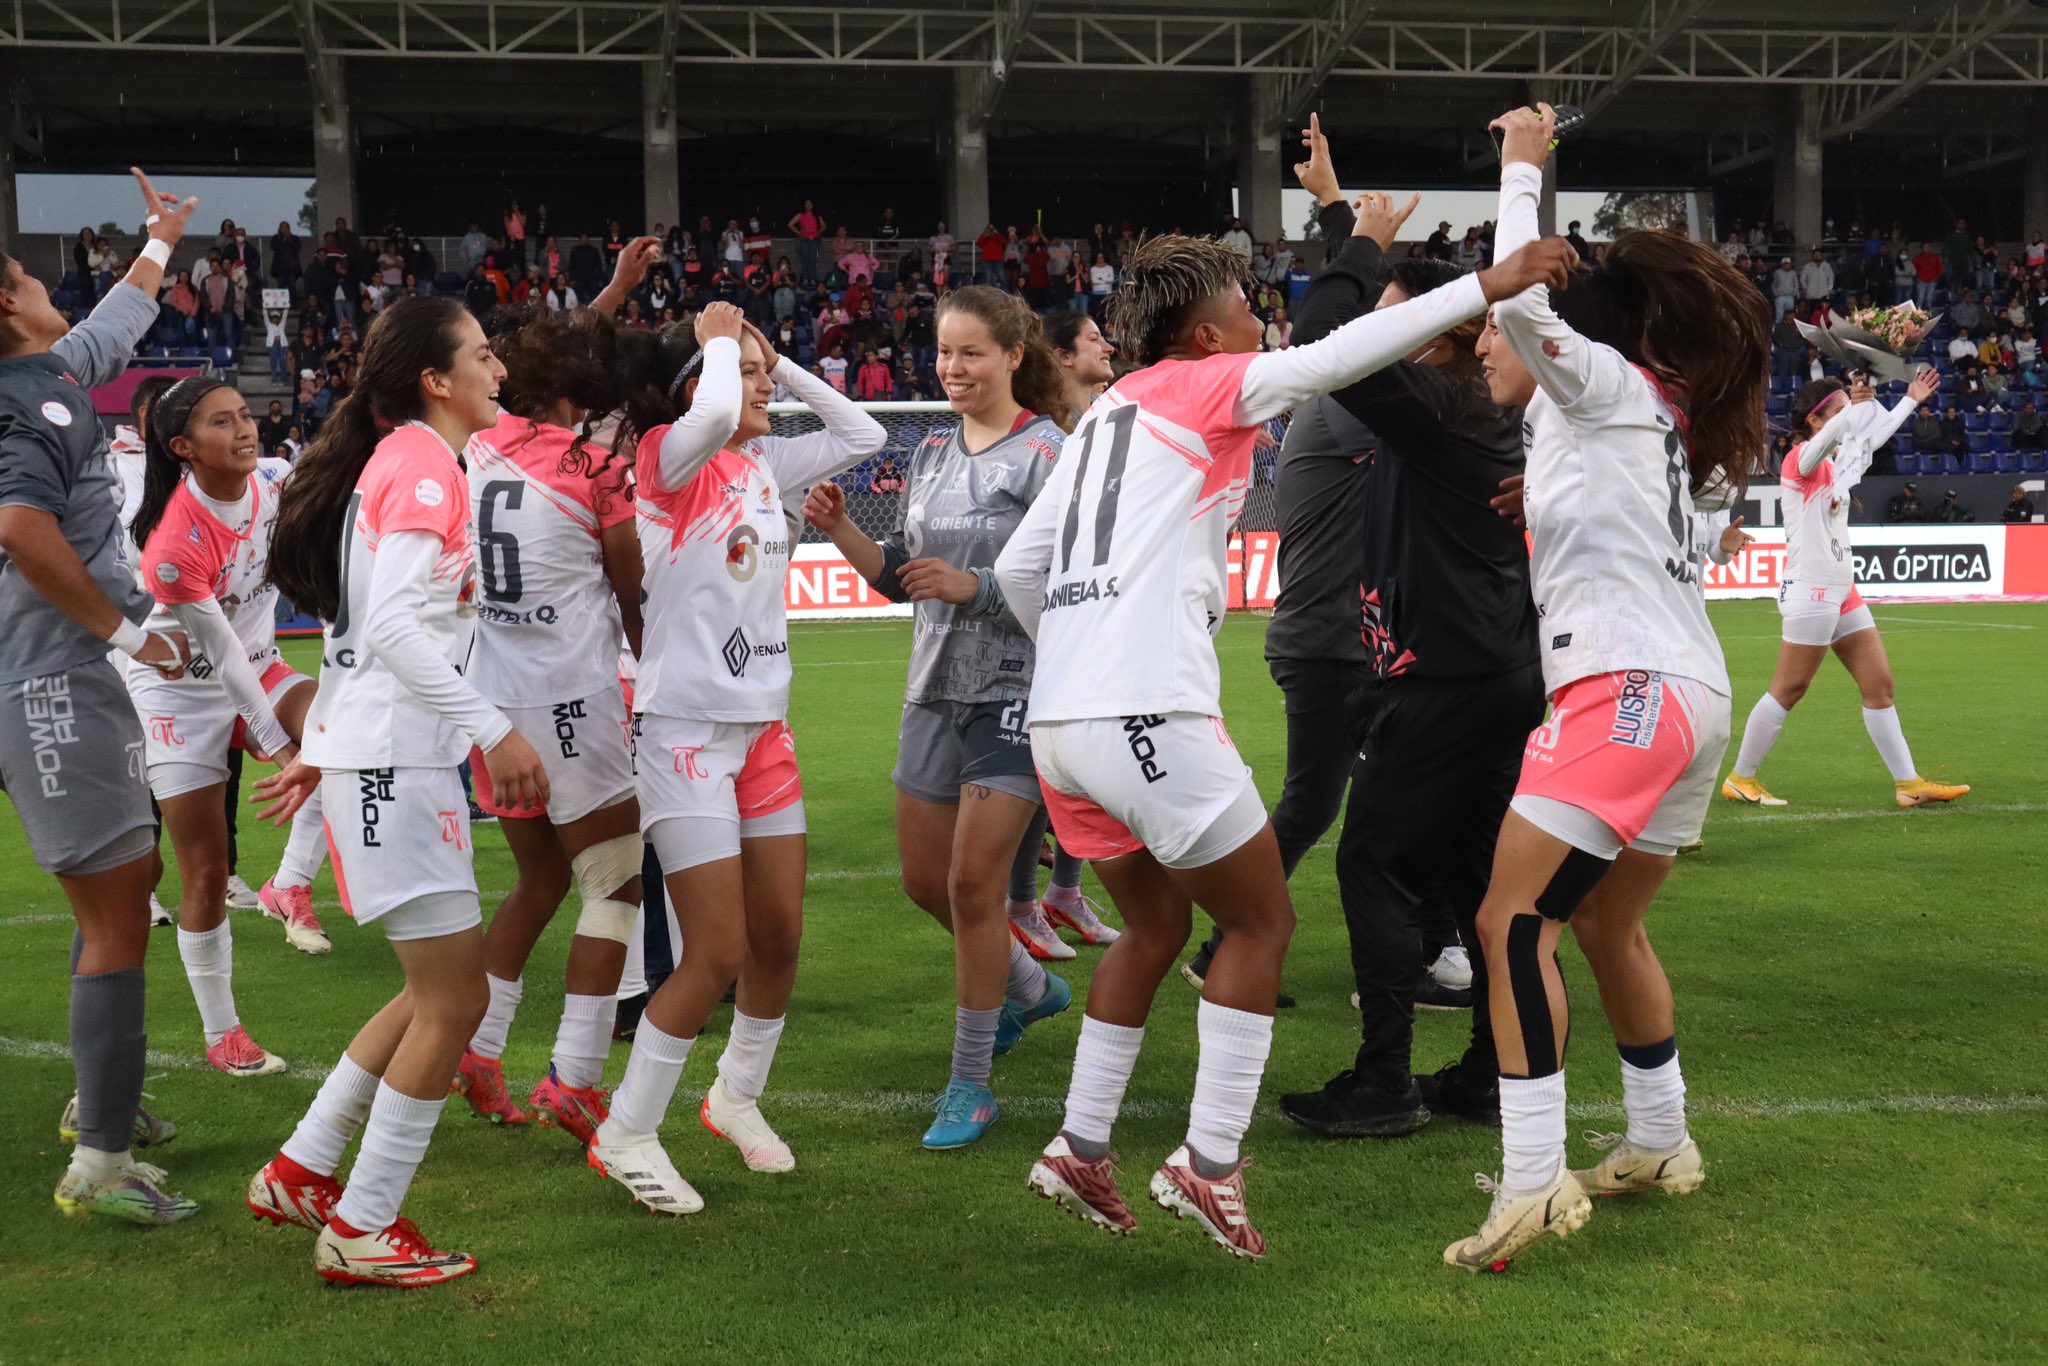 Ñañas son las campeonas del fútbol femenino en Ecuador